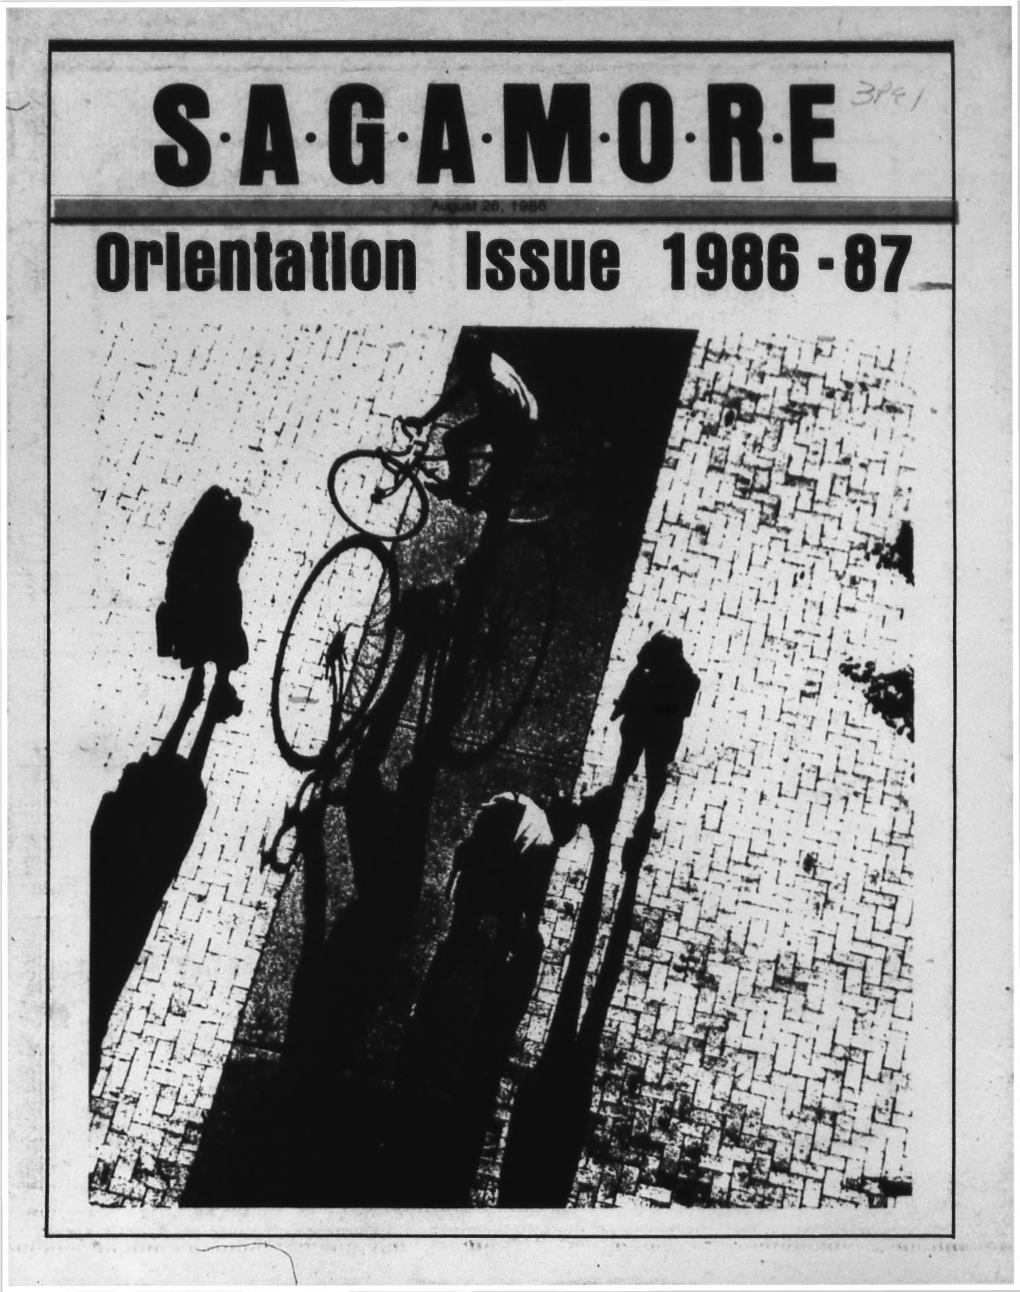 Orientation Issue 1986-87